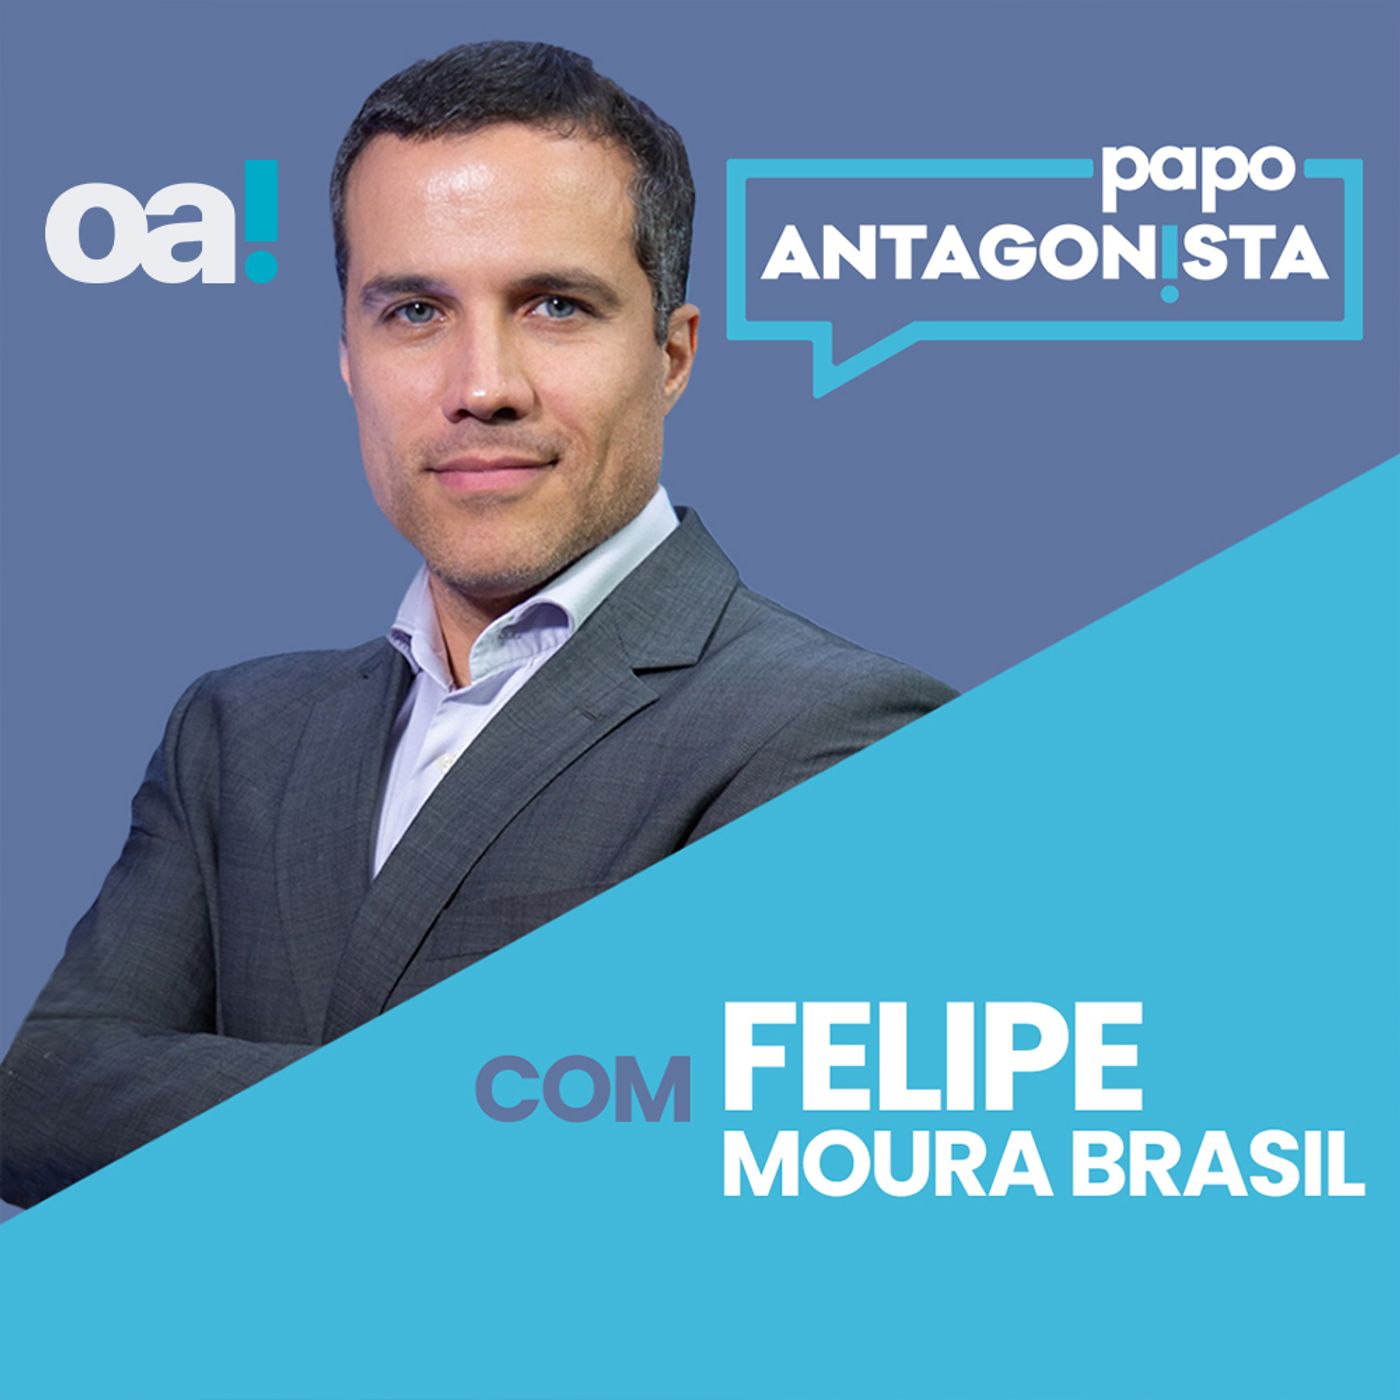 Papo Antagonista: A transparência zero de Lula e STF - 25/04